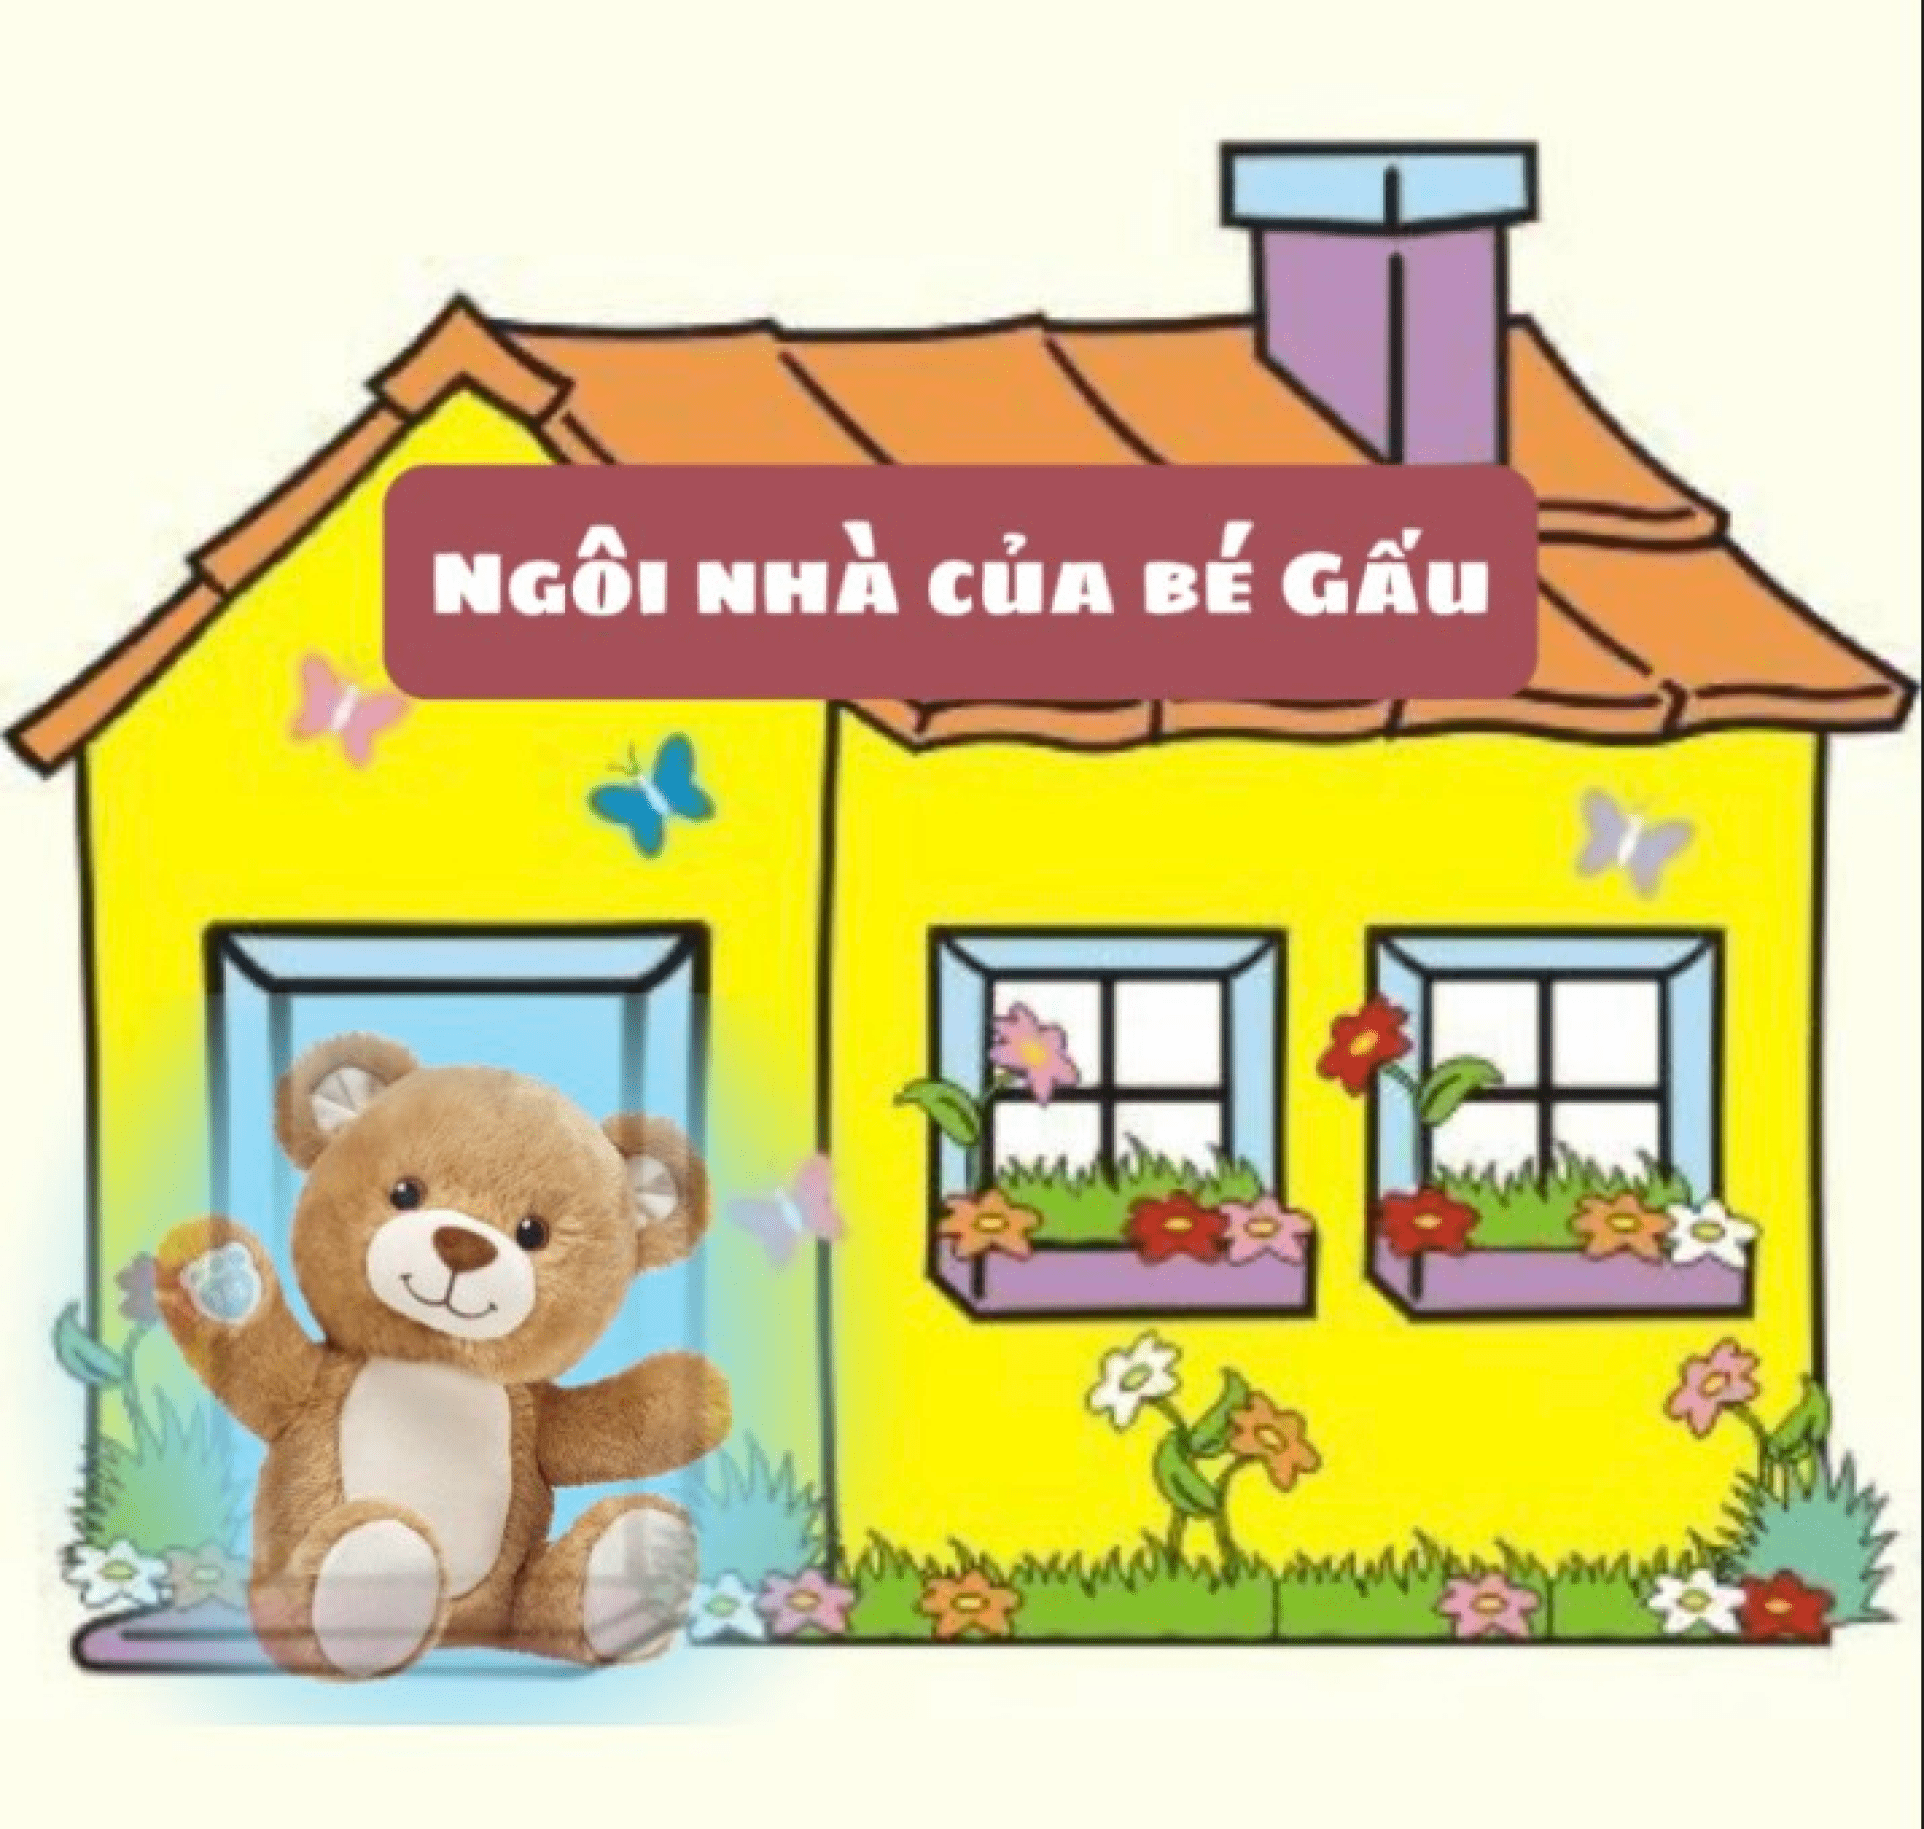 Ngôi nhà của Gấu